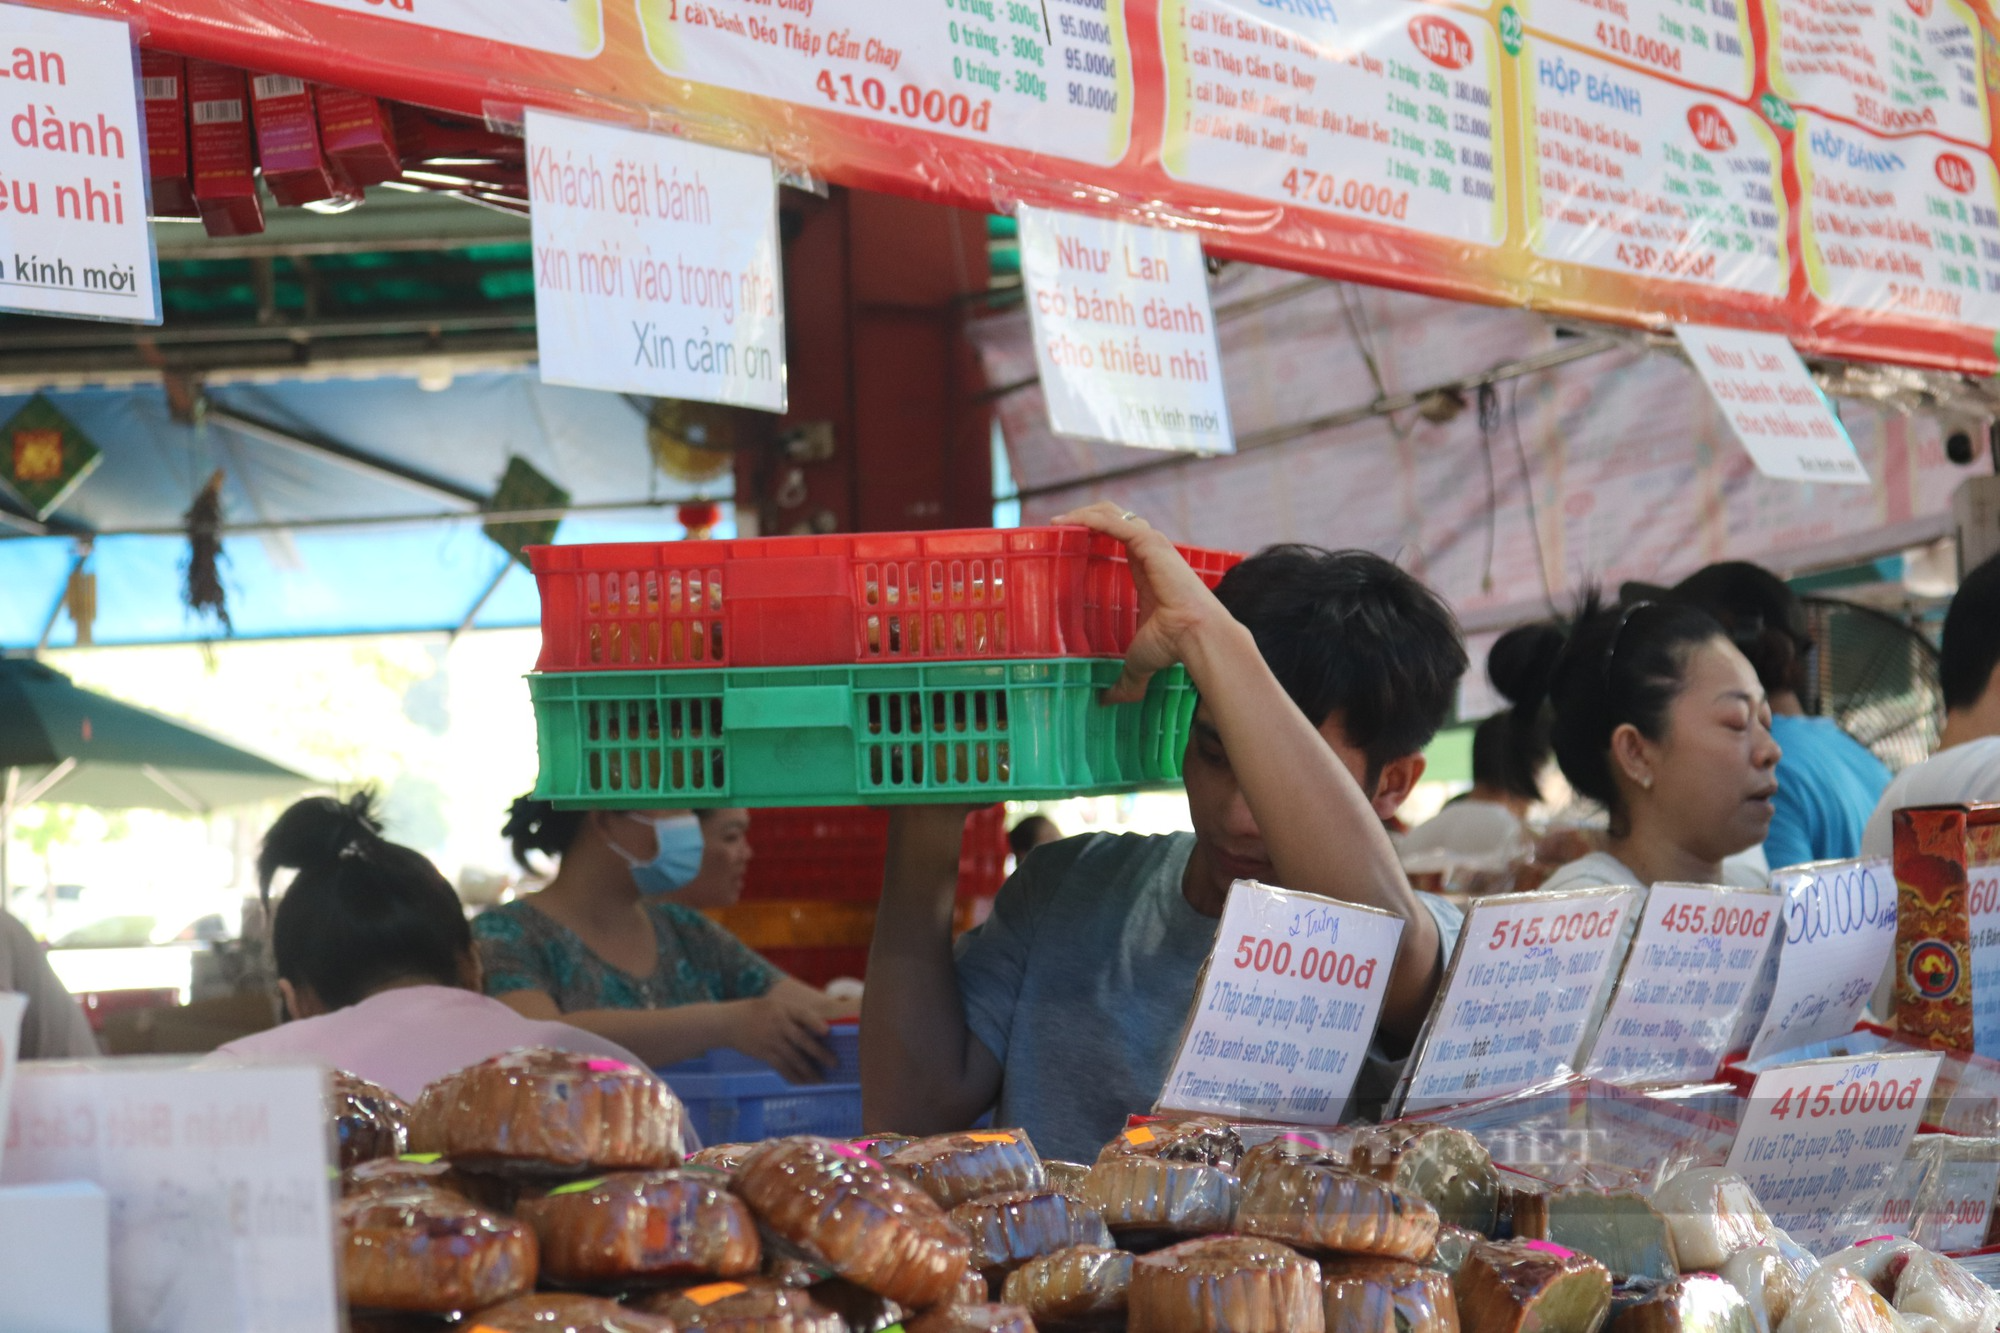 Giữa lúc bánh trung thu đại hạ giá vẫn ế, thương hiệu nổi tiếng nhất Sài Gòn đang bán buôn ra sao? - Ảnh 3.